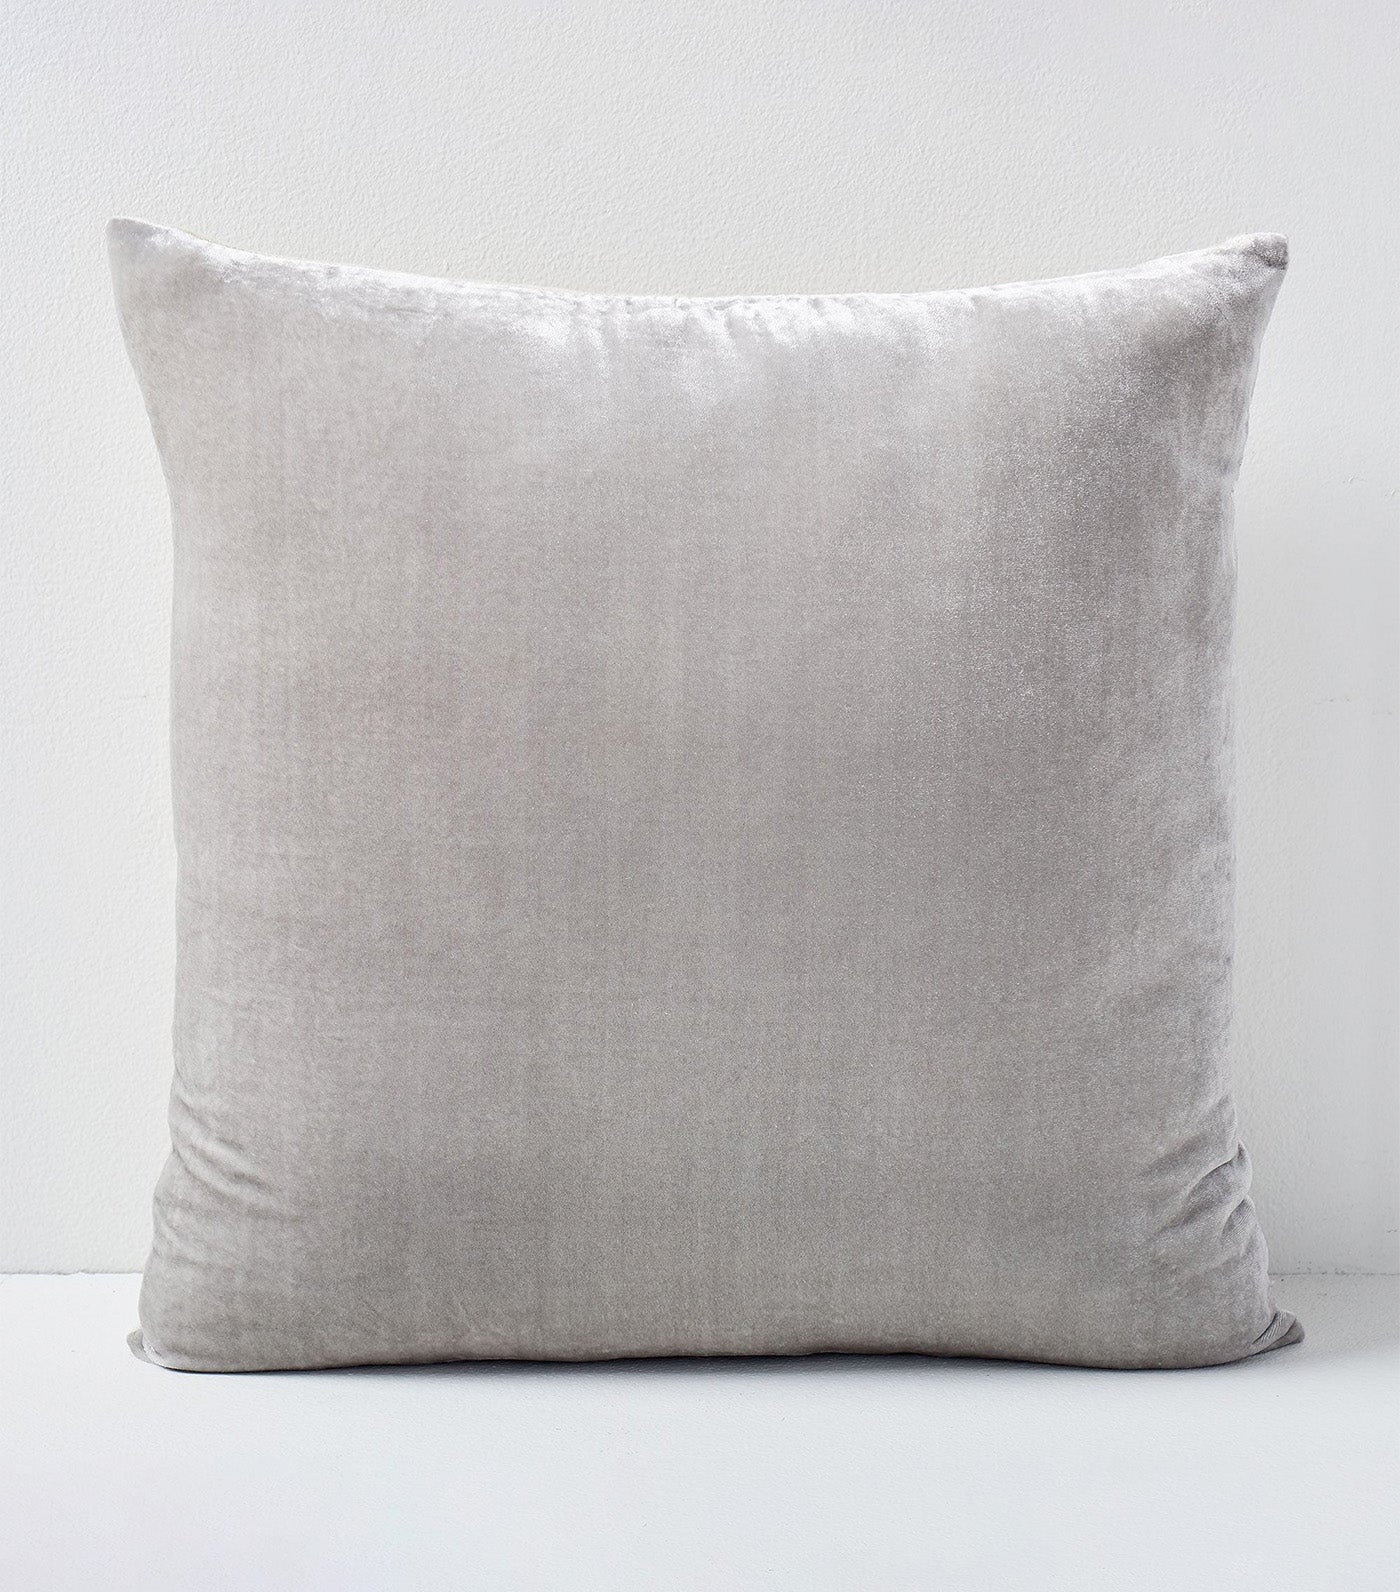 Lush Velvet Pillow Cover